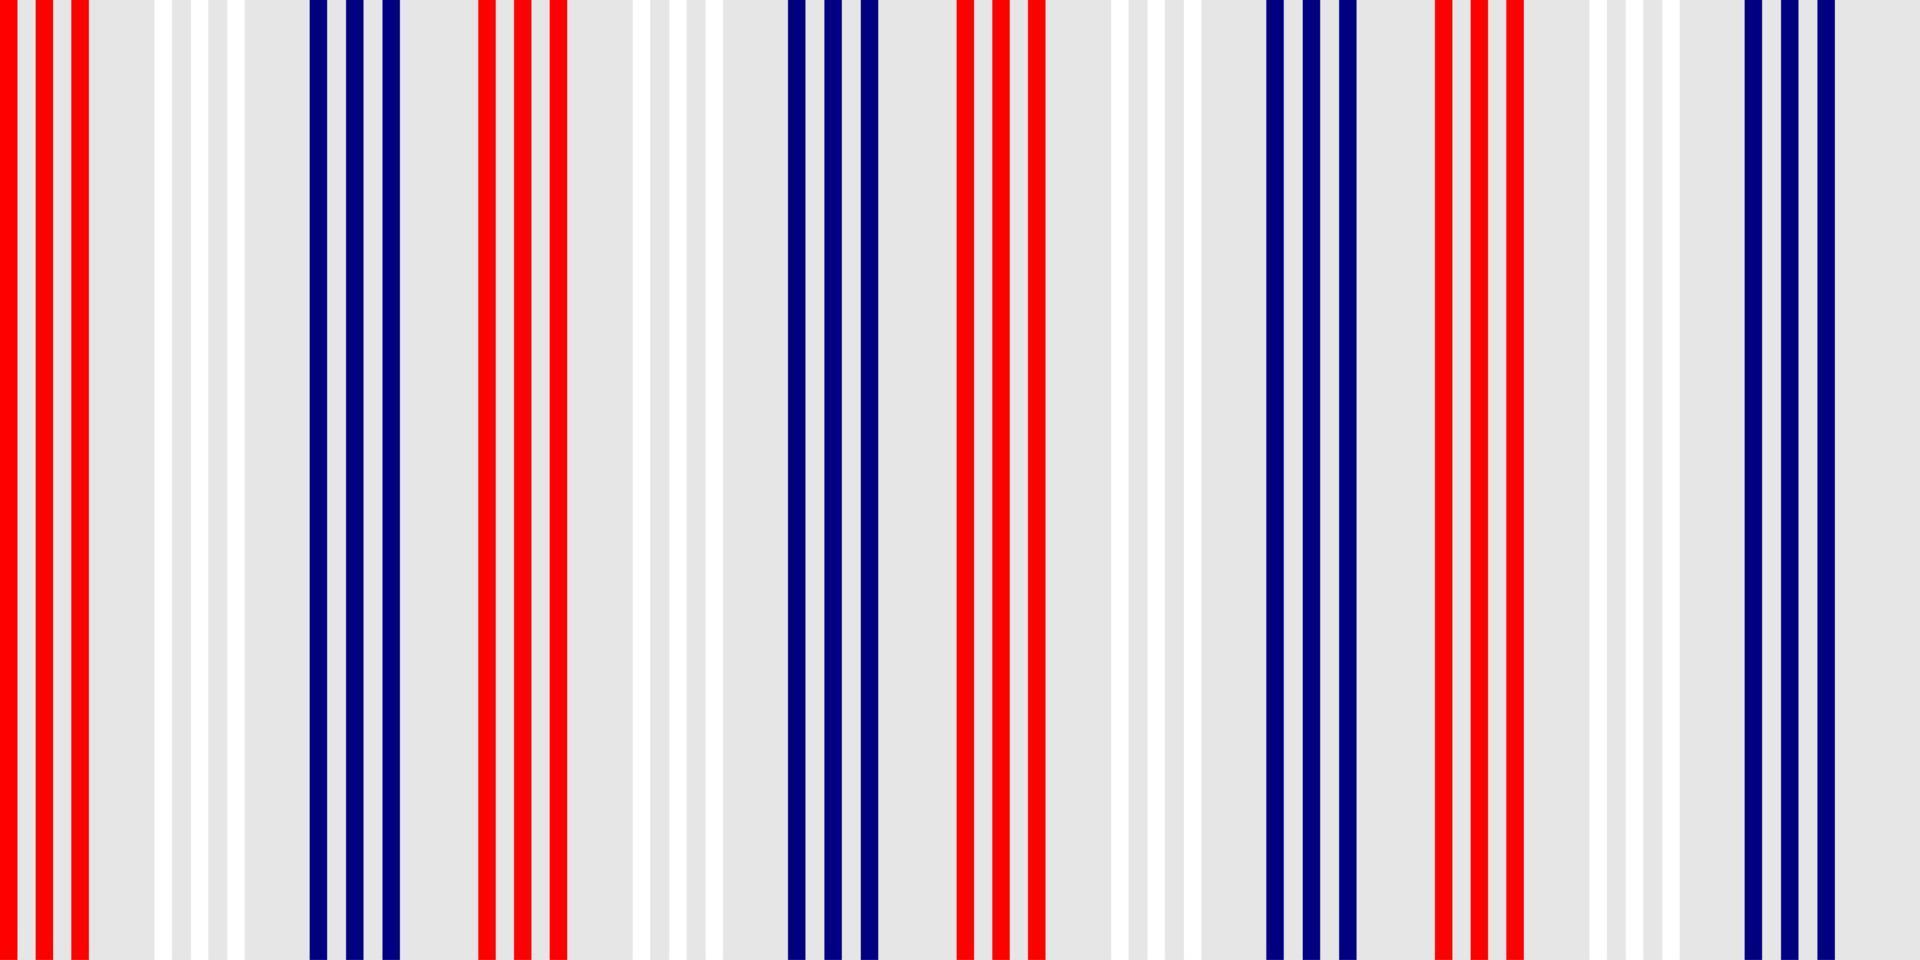 rode, witte, grijze en blauwe kleur van verticale streep, naadloos patroon. gelukkige onafhankelijkheidsdag 4 juli. verenigde staat van amerika, frankrijk, thailand, nieuw Zeeland, nederland, brits, groot-brittannië vector